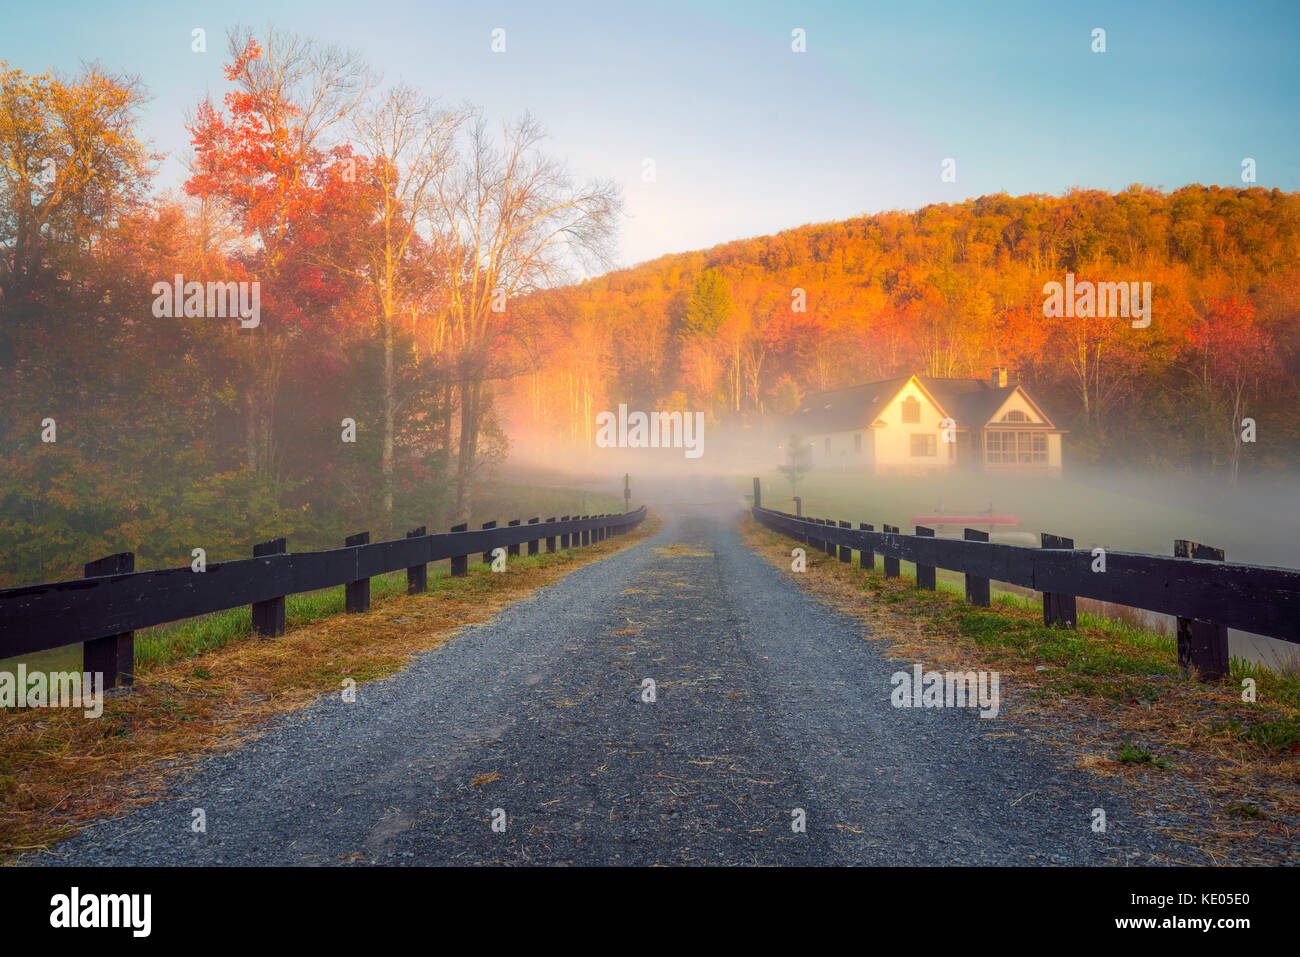 Eine lange, Zaun - gezeichnete Spur führt in eine Bank von Nebel mit glühenden sonnigen Herbst Laub im Hintergrund. Stockfoto